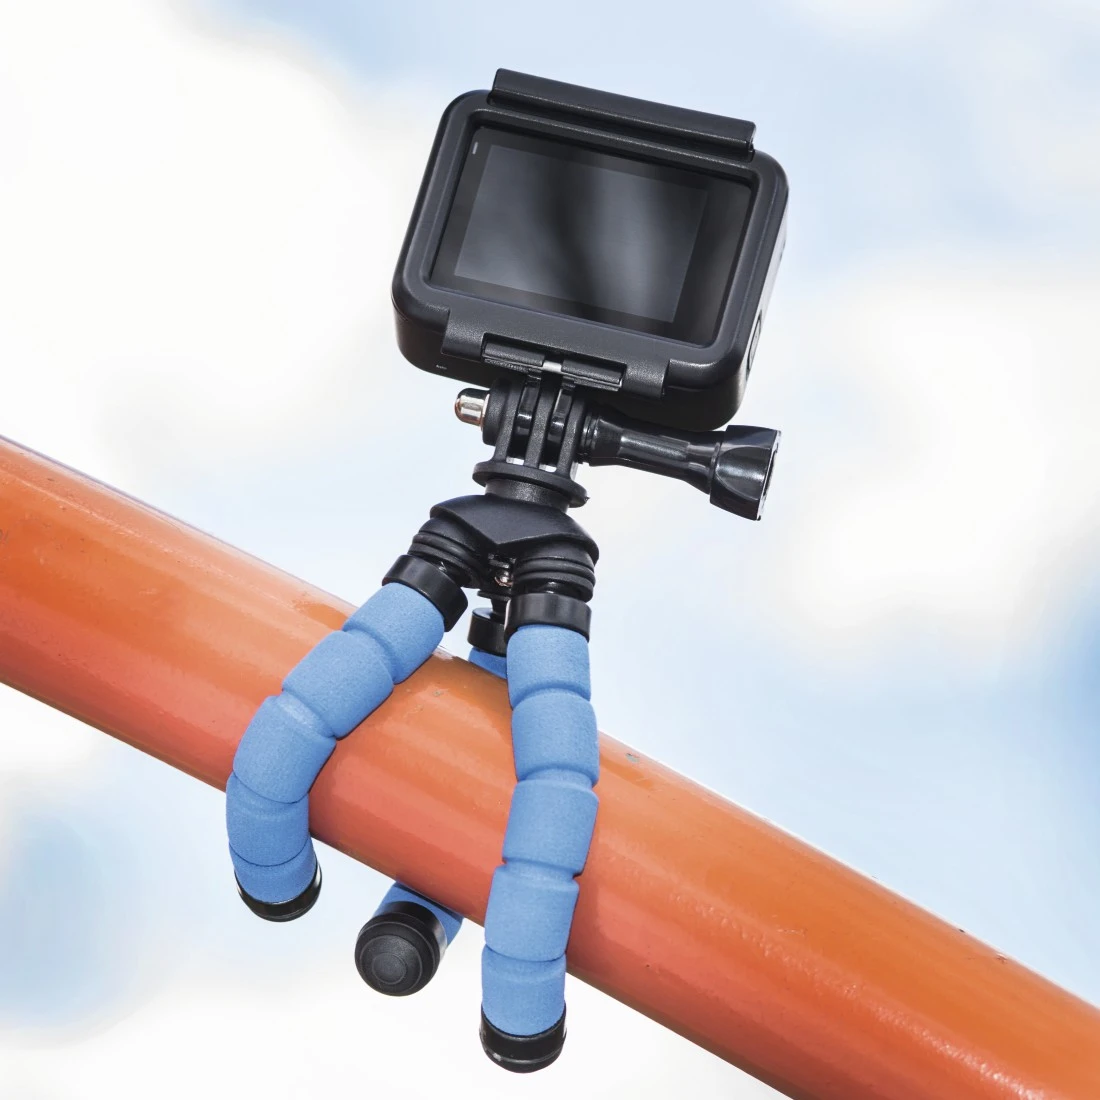 Trépied Flex pour smartphone et GoPro, 26 cm, bleu